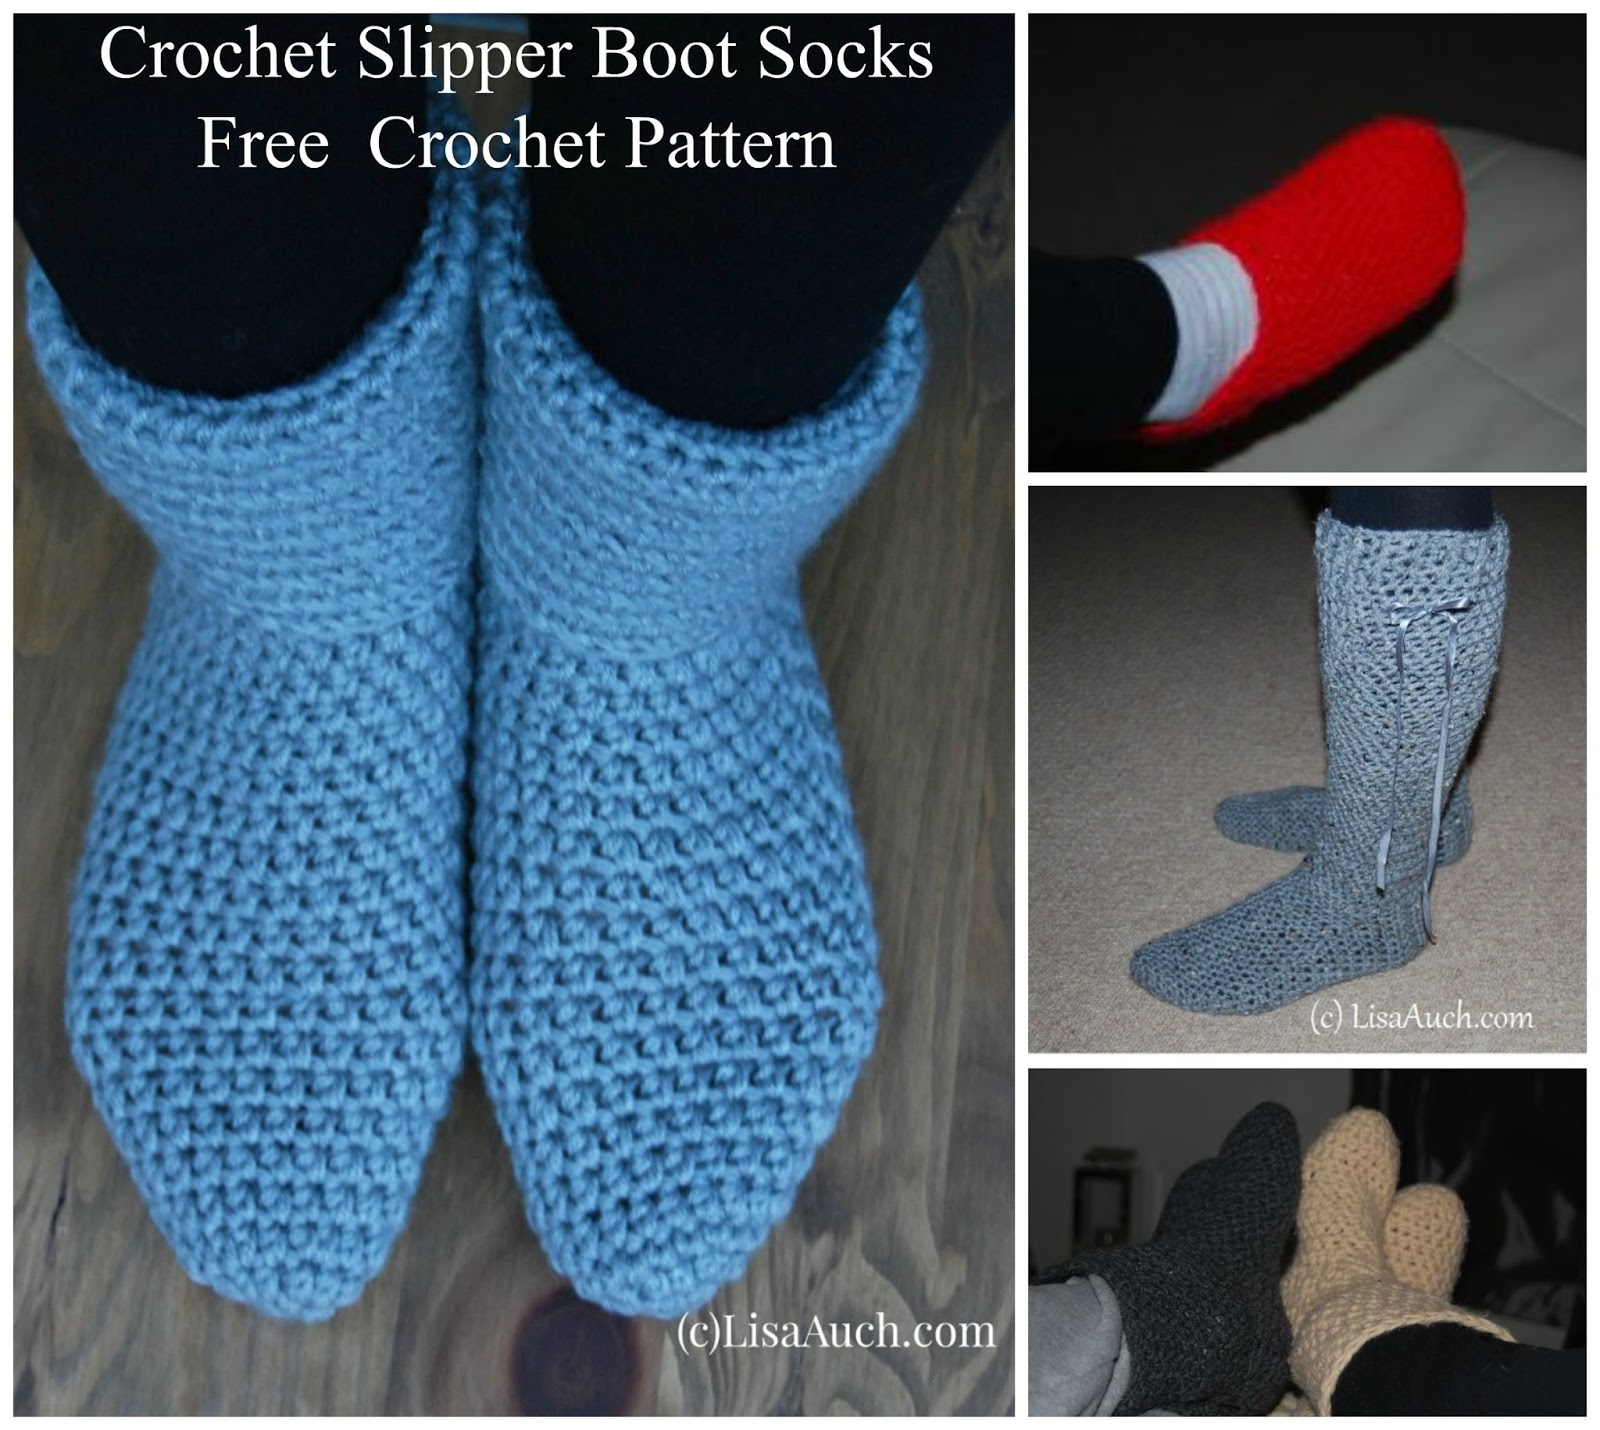 Beginner Crochet Patterns Free Free Crochet Patterns And Designs Lisaauch Crochet Slipper Boots